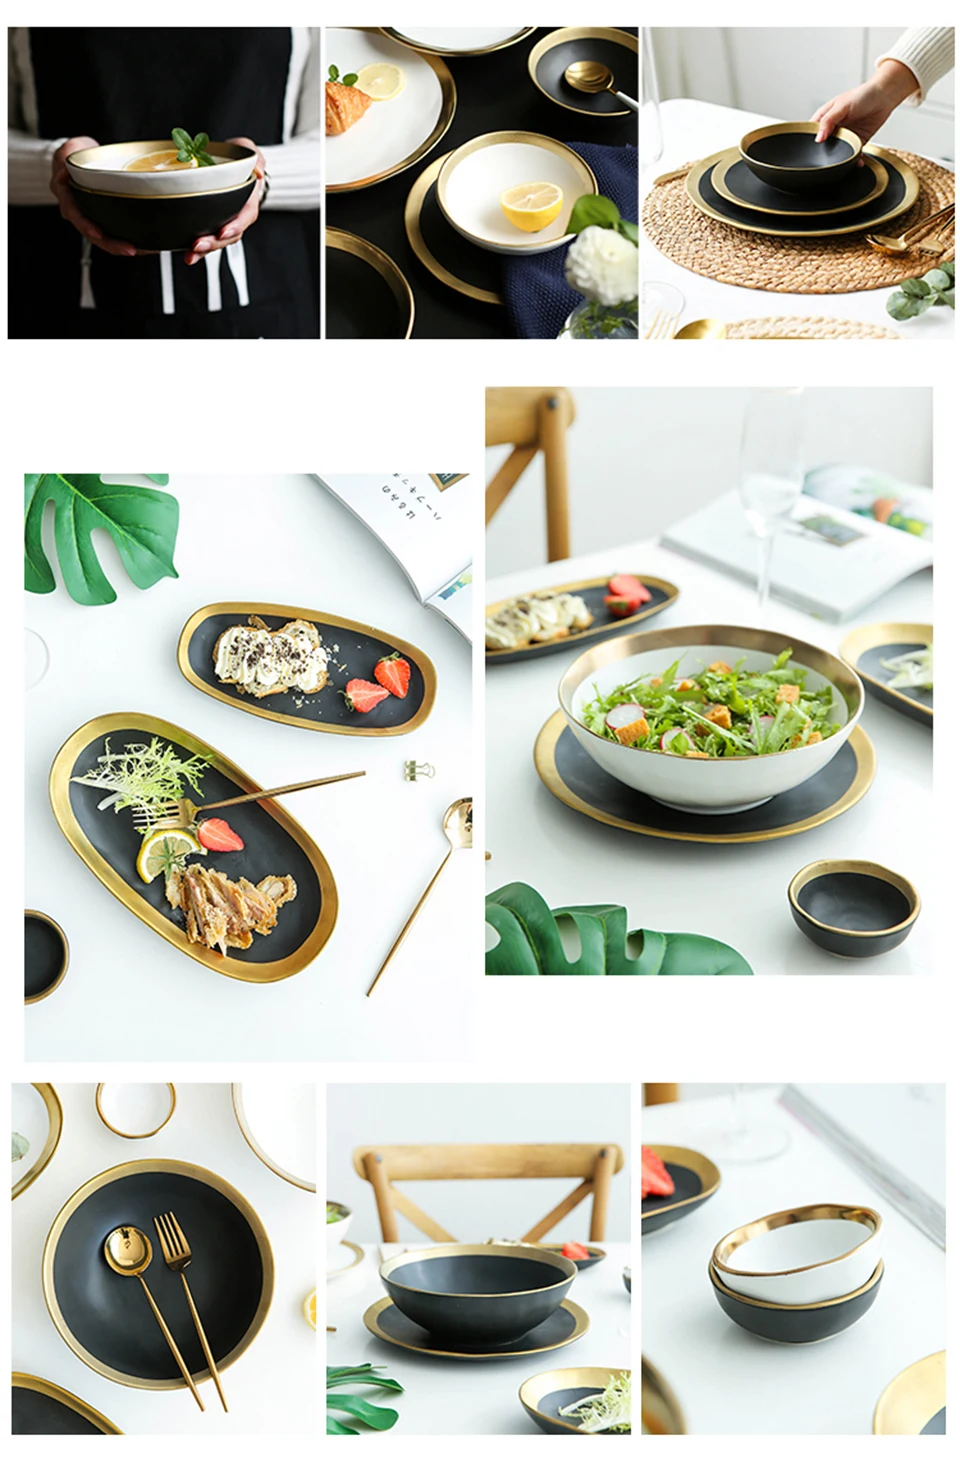 Золотая инкрустация, матовая фарфоровая обеденная тарелка, роскошная круглая тарелка для свадебной вечеринки, домашняя декоративная посуда и тарелки, набор посуды